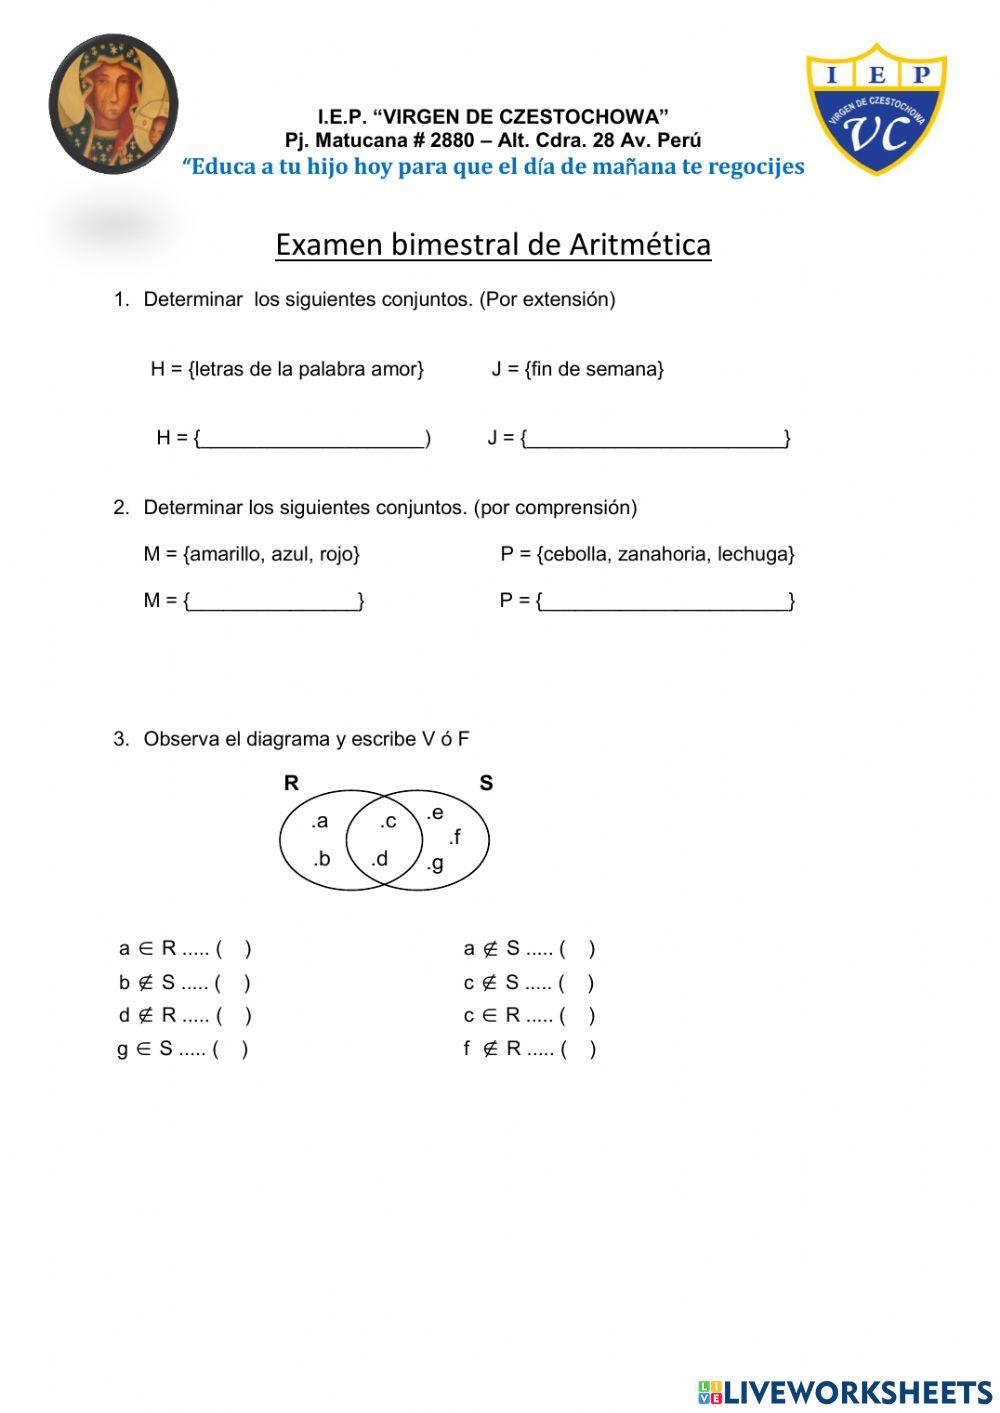 Examen bimestral de Aritmética